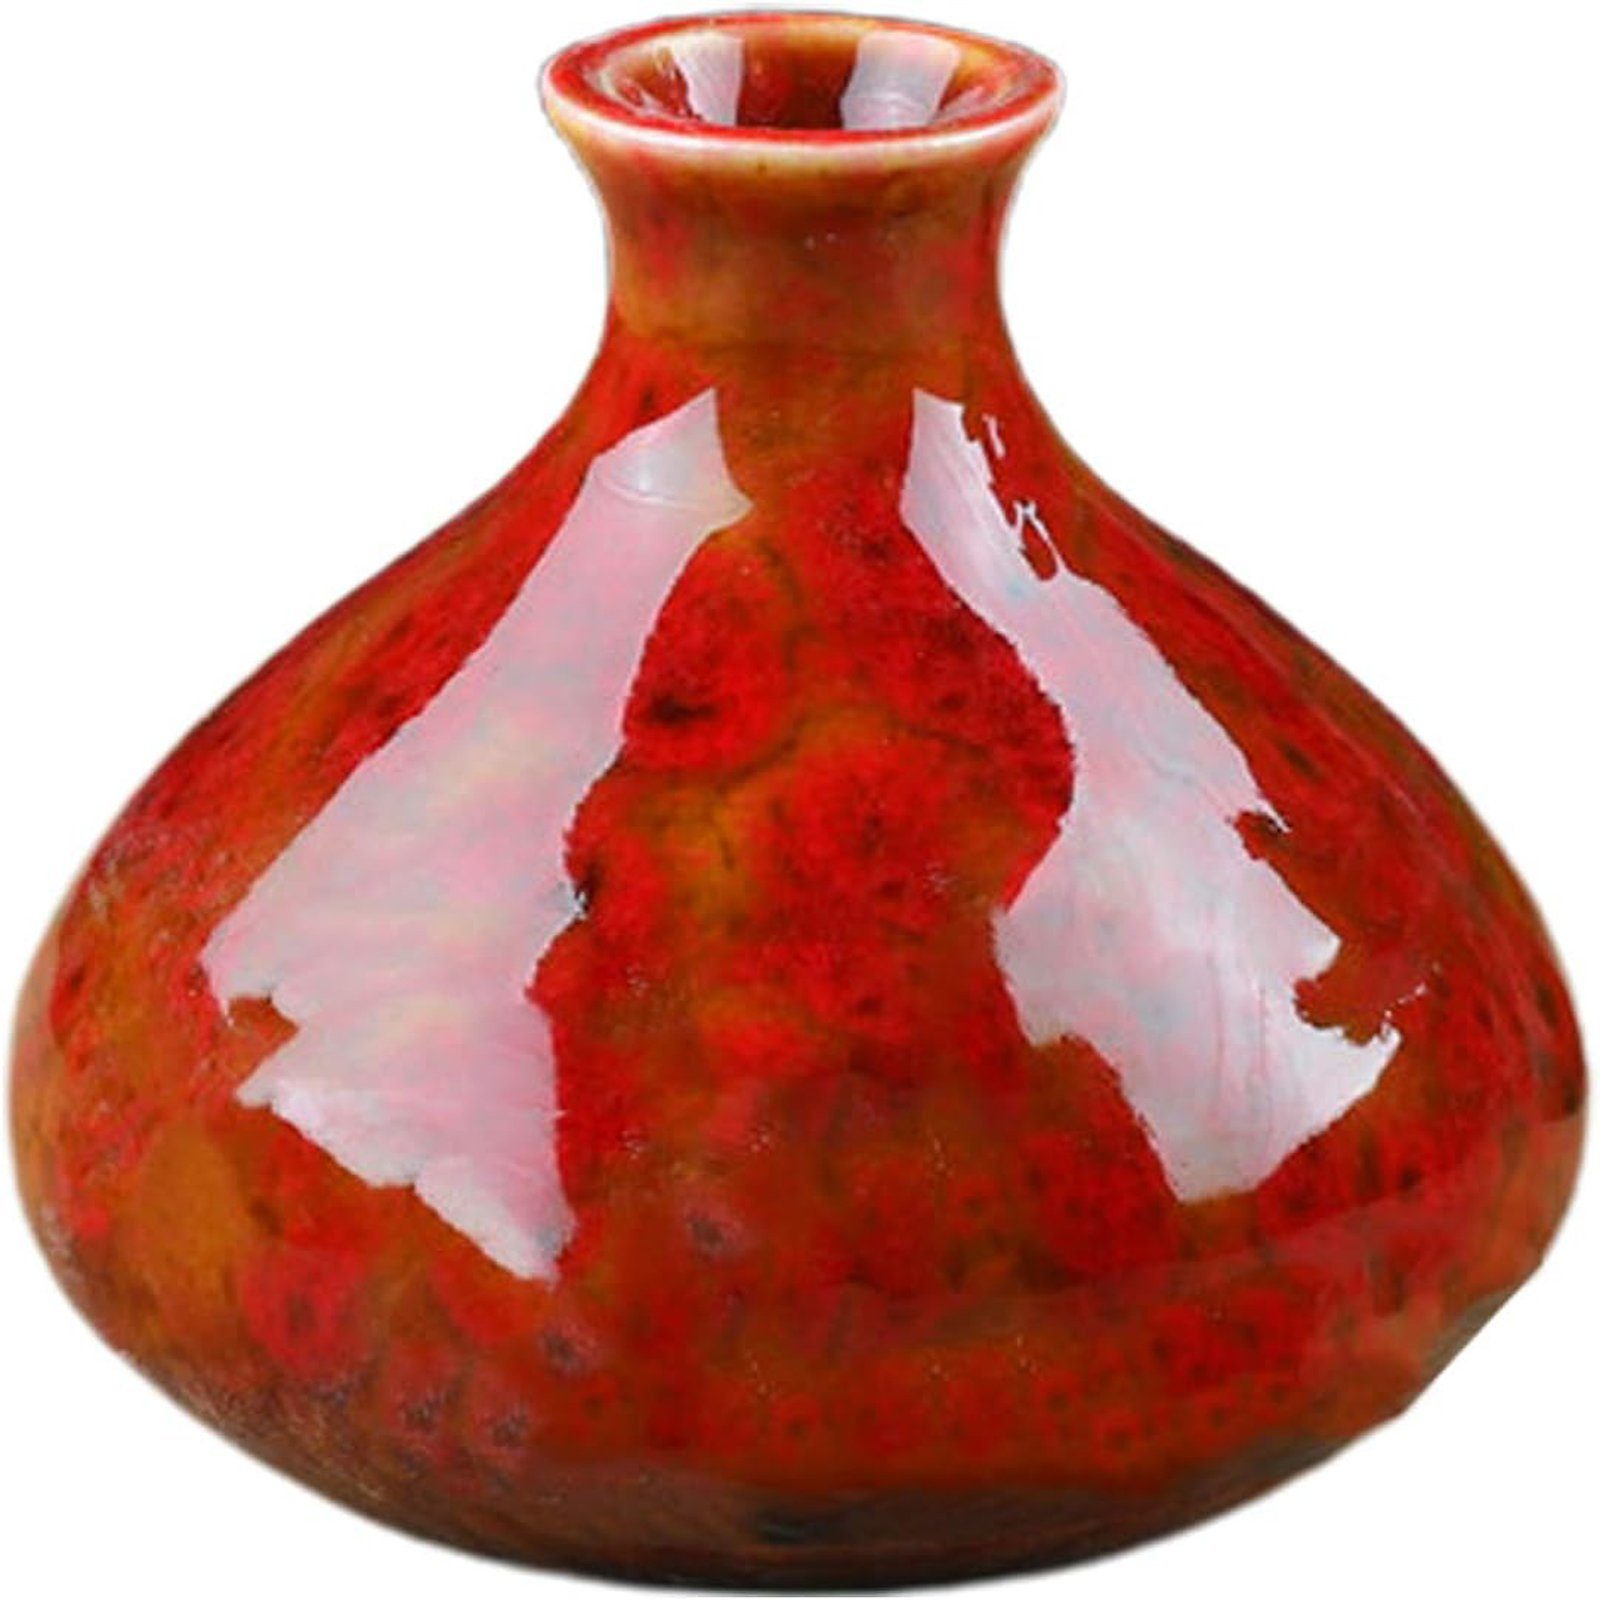 für Heimdekoration, Kaliber Bauch, Regal, SEEZSSA Wohnzimmer, Keramikvase,Blumentopf deko 2.4cm,7x7.5cm,bunt Brenngeformte Keramik-Vase,großer Rot Dekovase